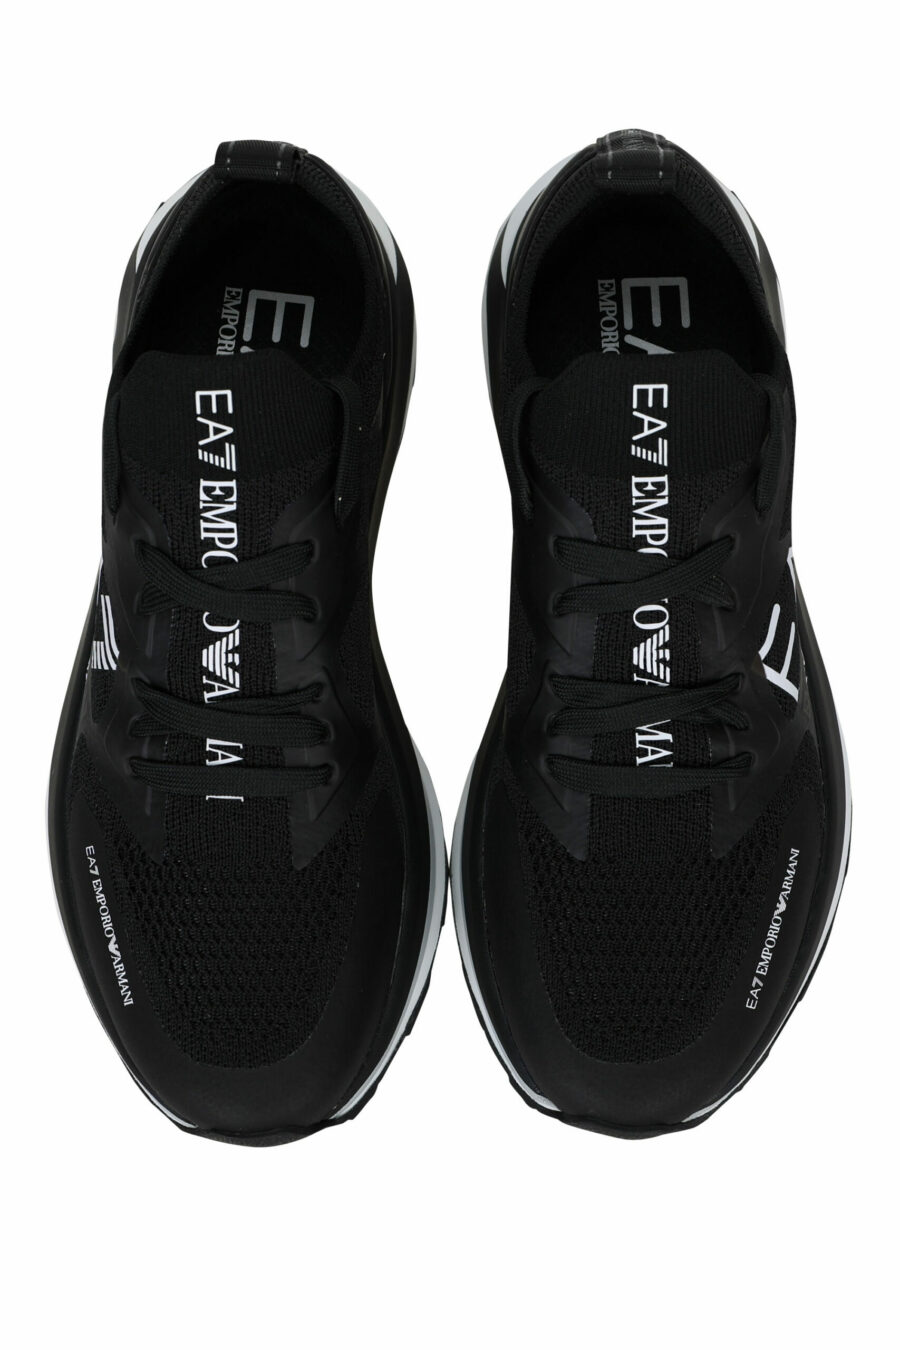 Zapatillas negras con maxilogo "lux identity" blanco y suela blanca - 8057163136925 4 scaled